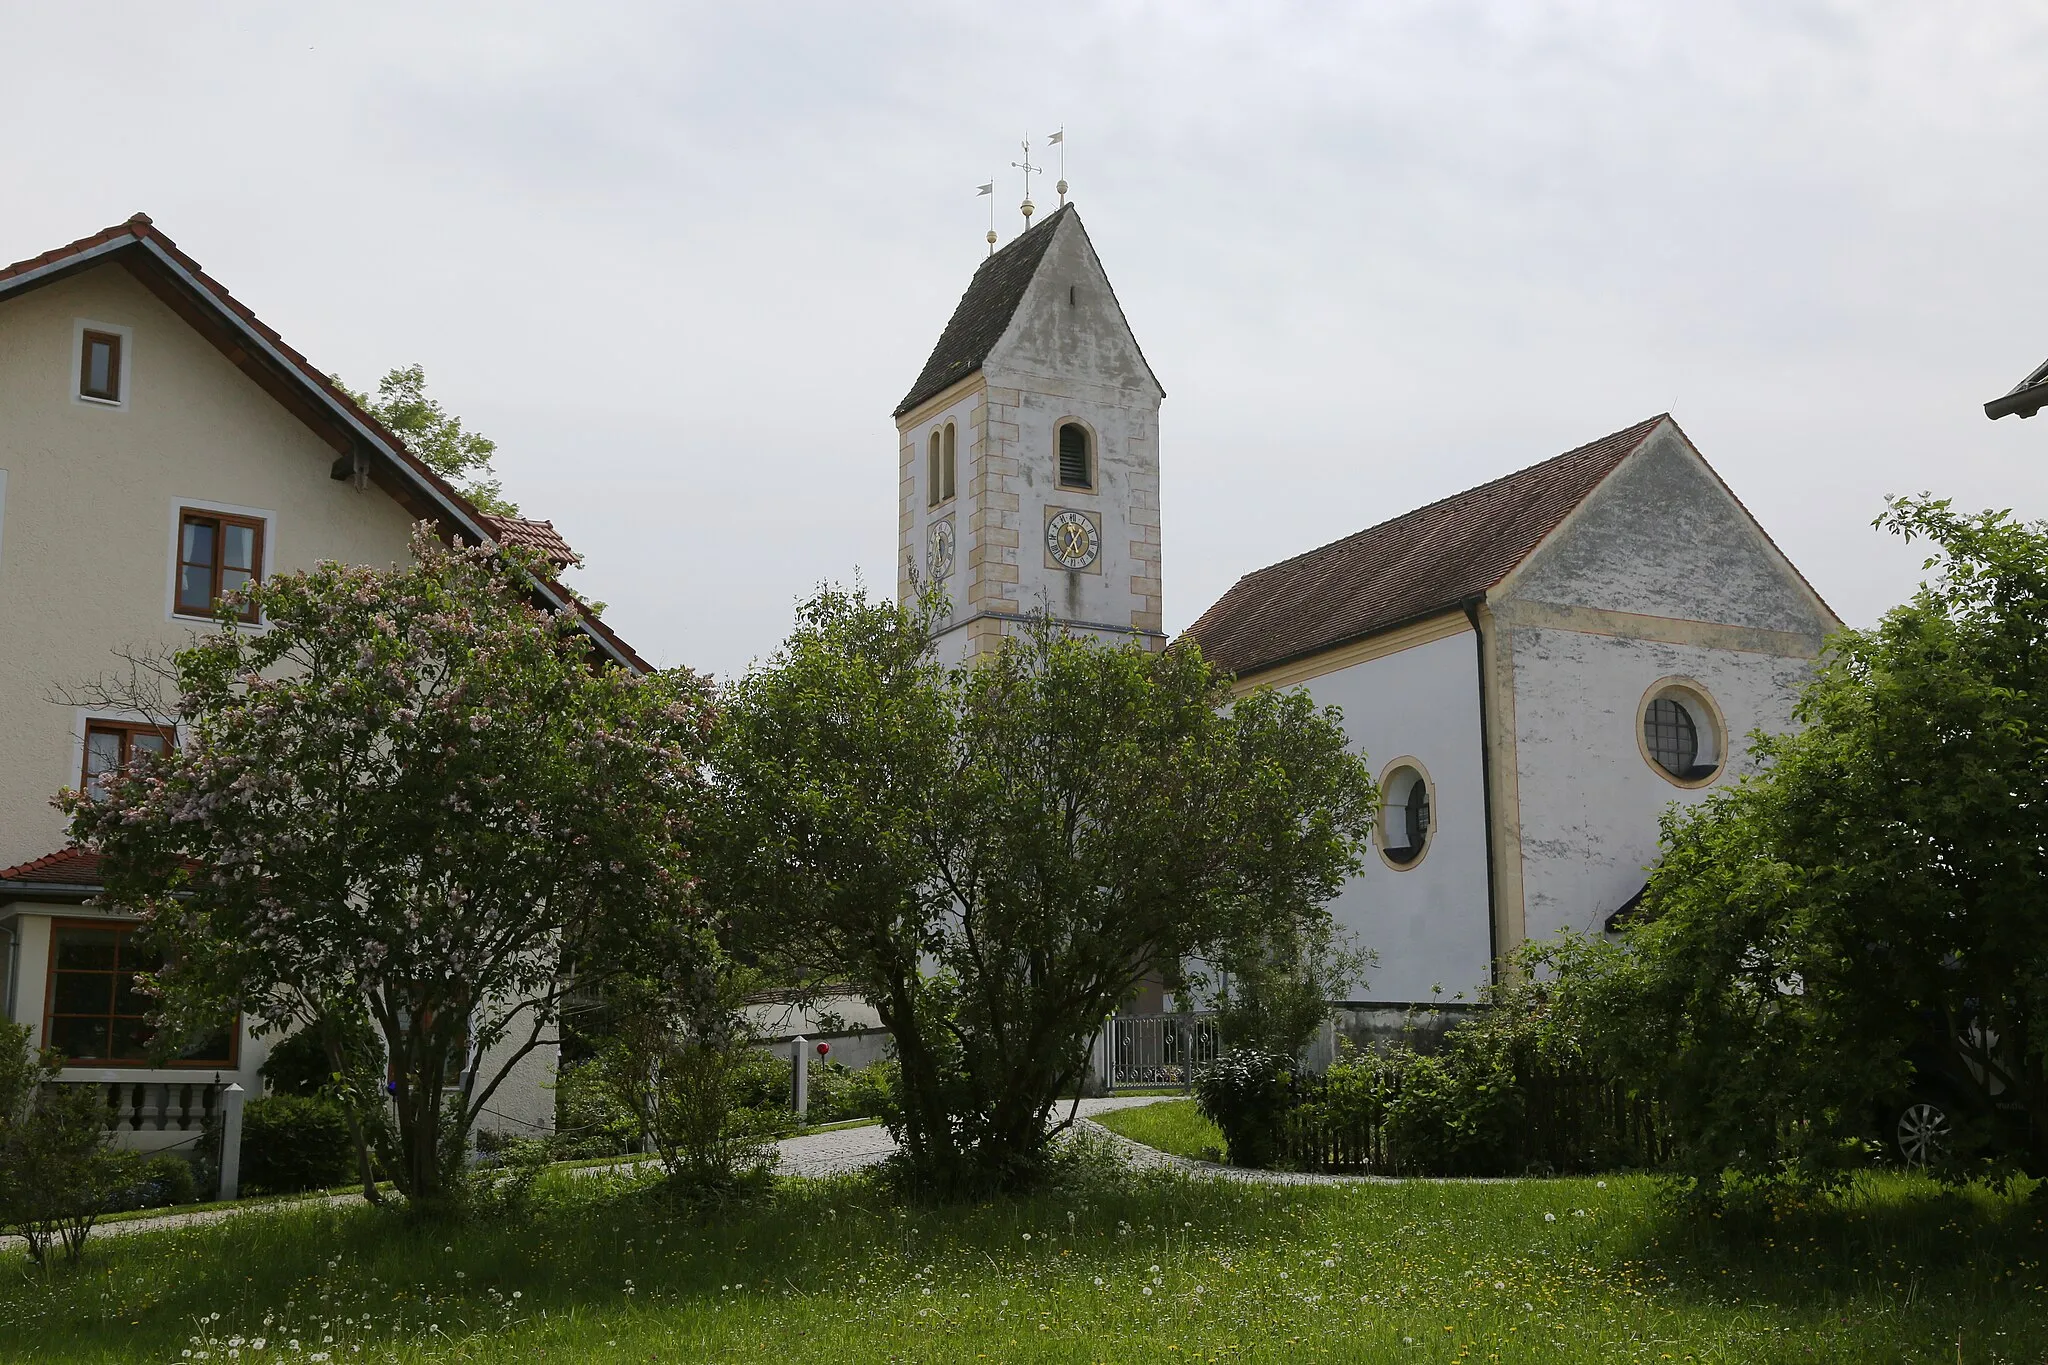 Photo showing: Marnbach ist ein Dorf im Landkreis Weilheim-Schongau und wurde als Ortsteil der Kreisstadt Weilheim eingemeindet. Das Bild zeigt die Kirche St. Michael im Zentrum des Dorfes.